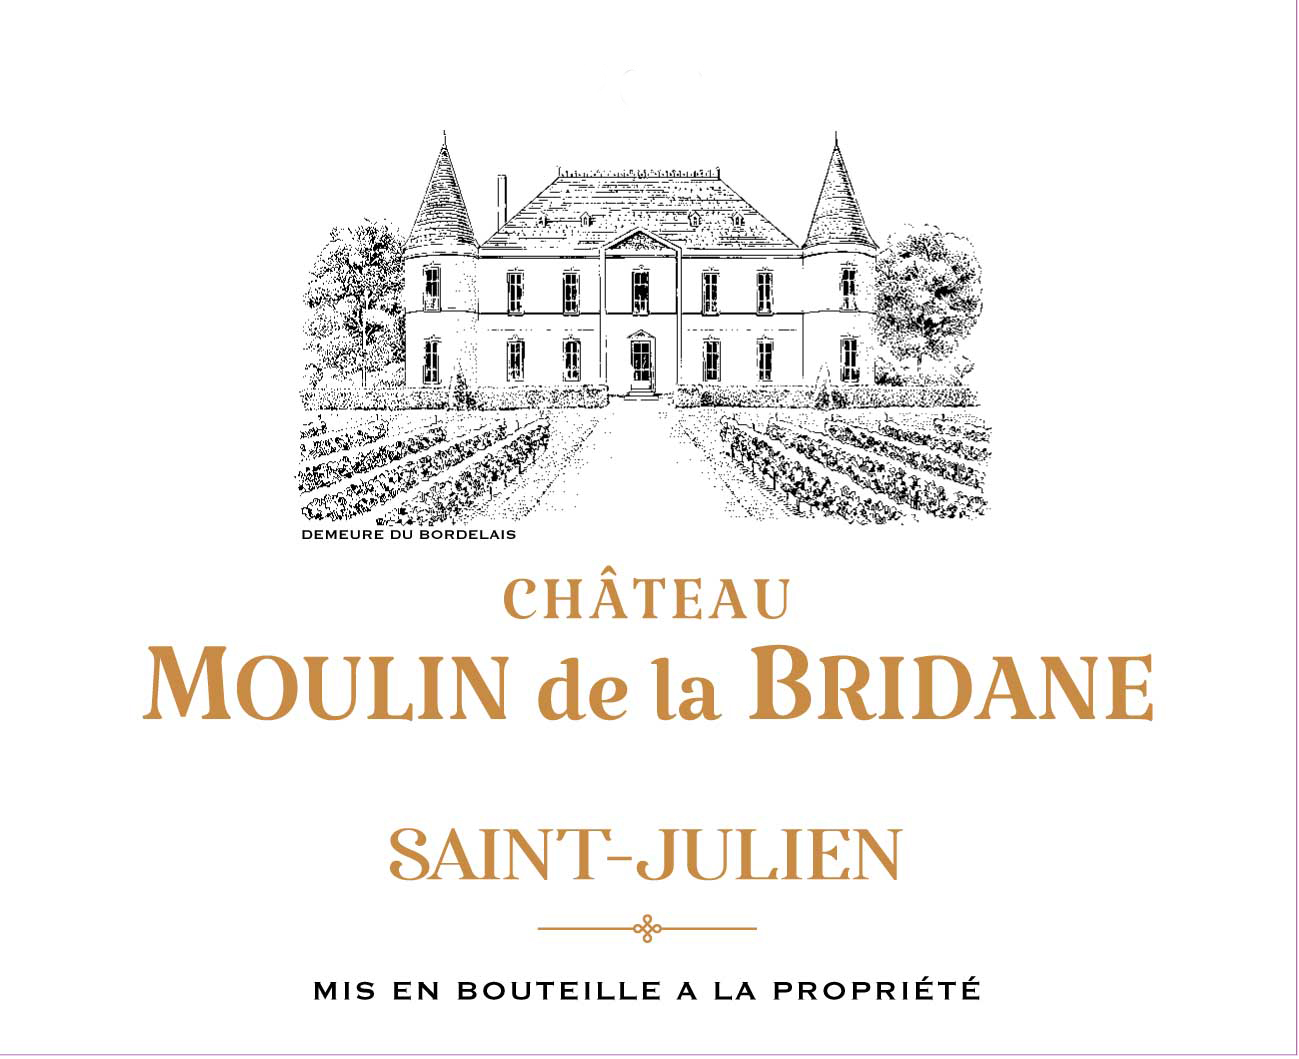 Chateau Moulin de la Bridane label